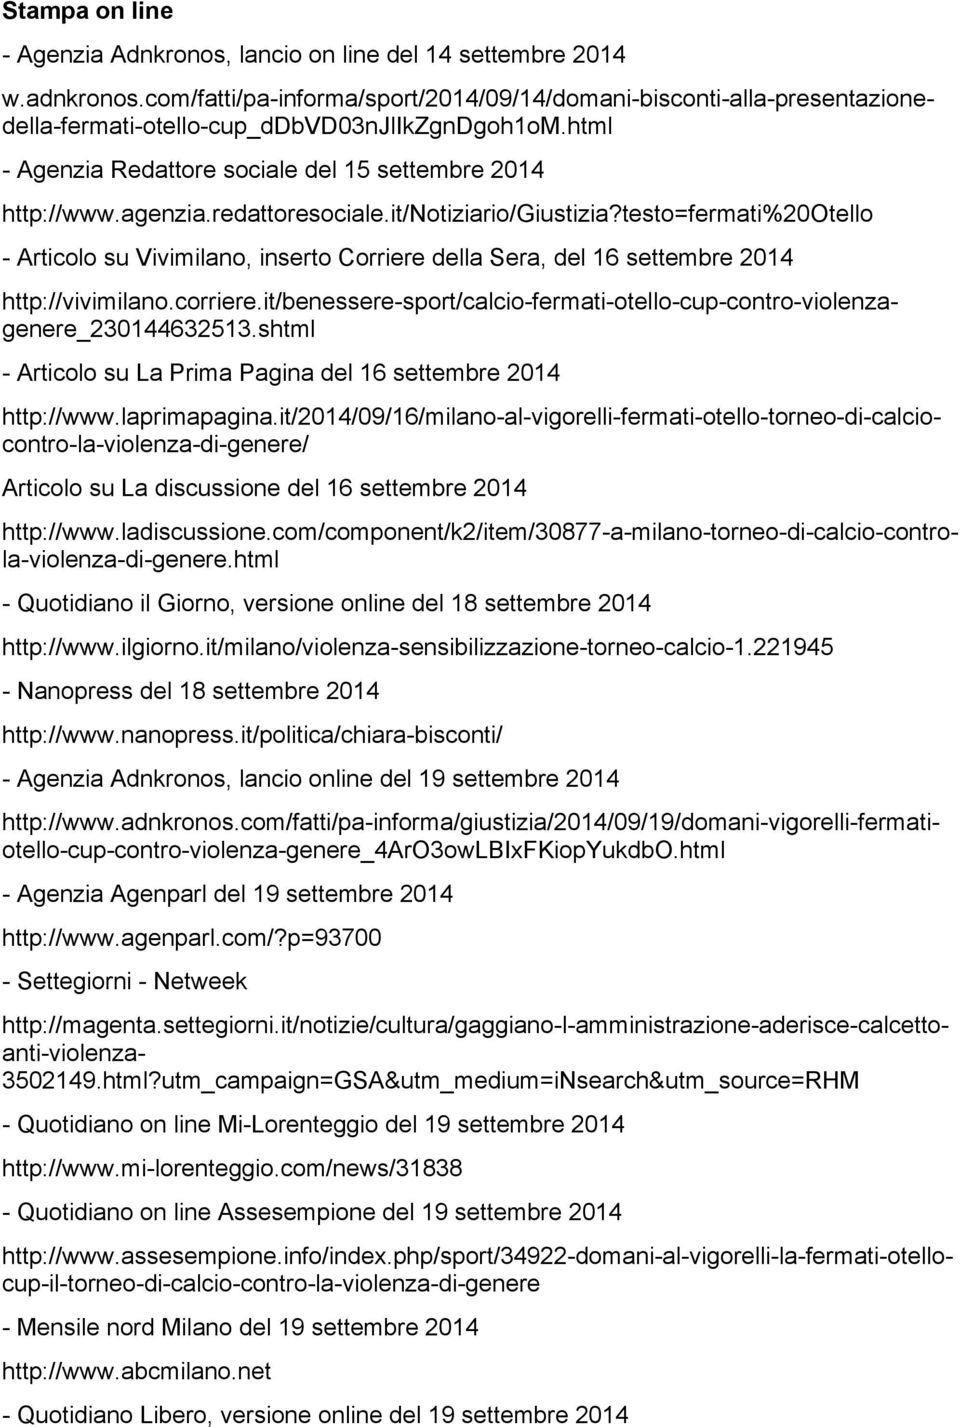 2014 - Quotidiano il Giorno, versione online del 18 settembre 2014 http://www.ilgiorno.it/milano/violenza-sensibilizzazione-torneo-calcio-1.221945 - Nanopress del 18 settembre 2014 http://www.